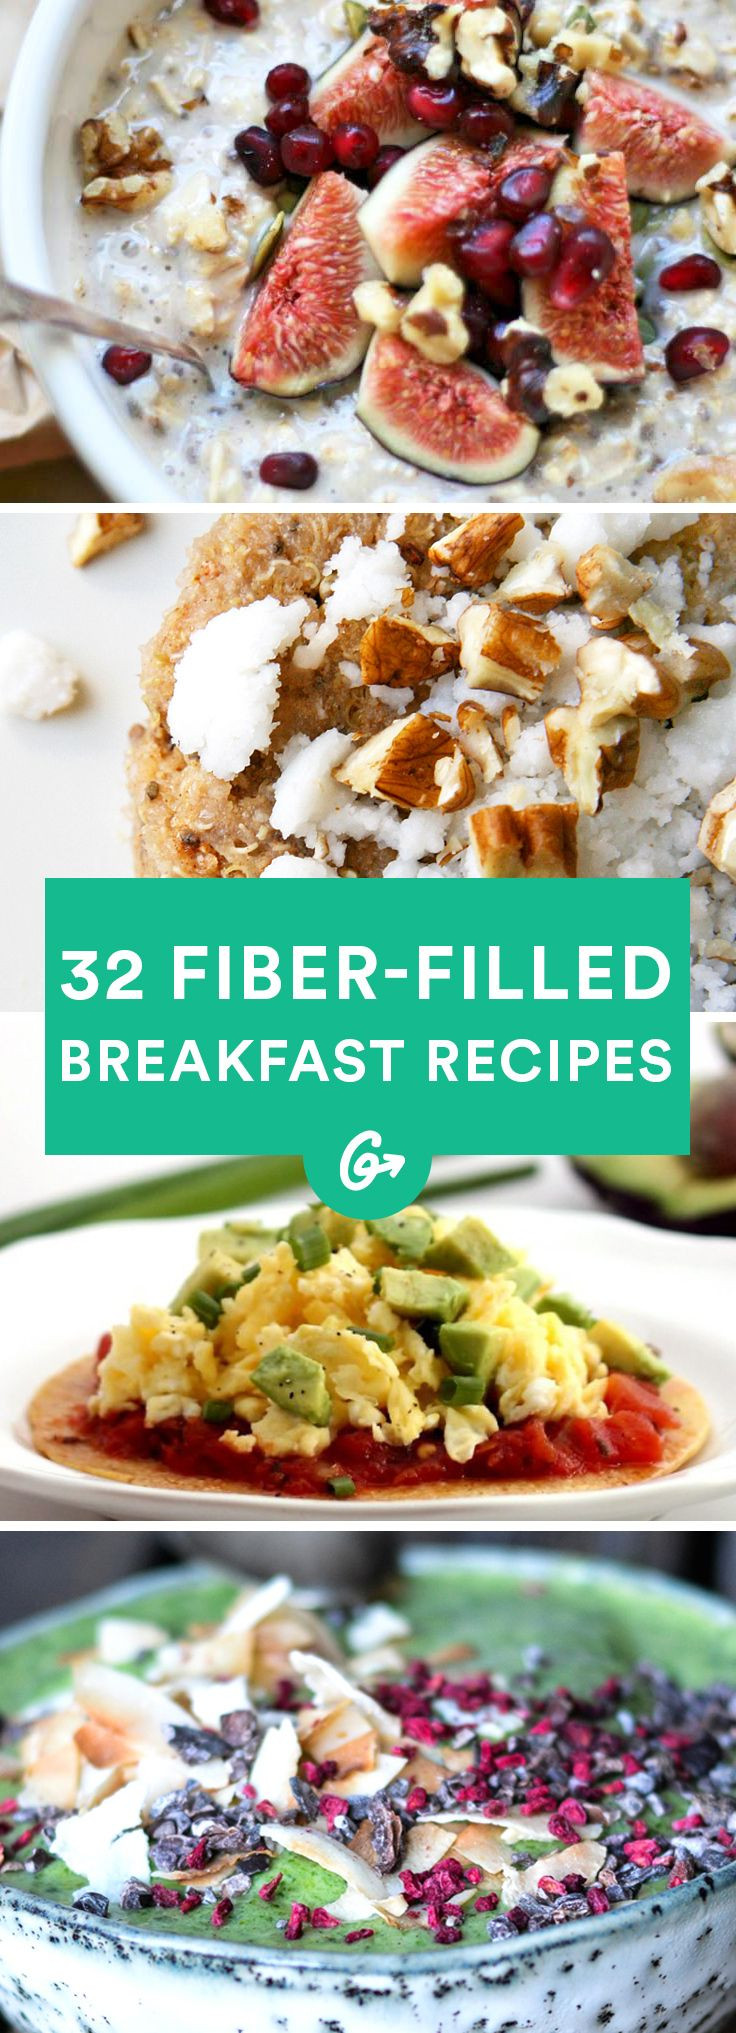 High Fiber Food Recipes
 Best 25 High fiber breakfast ideas on Pinterest